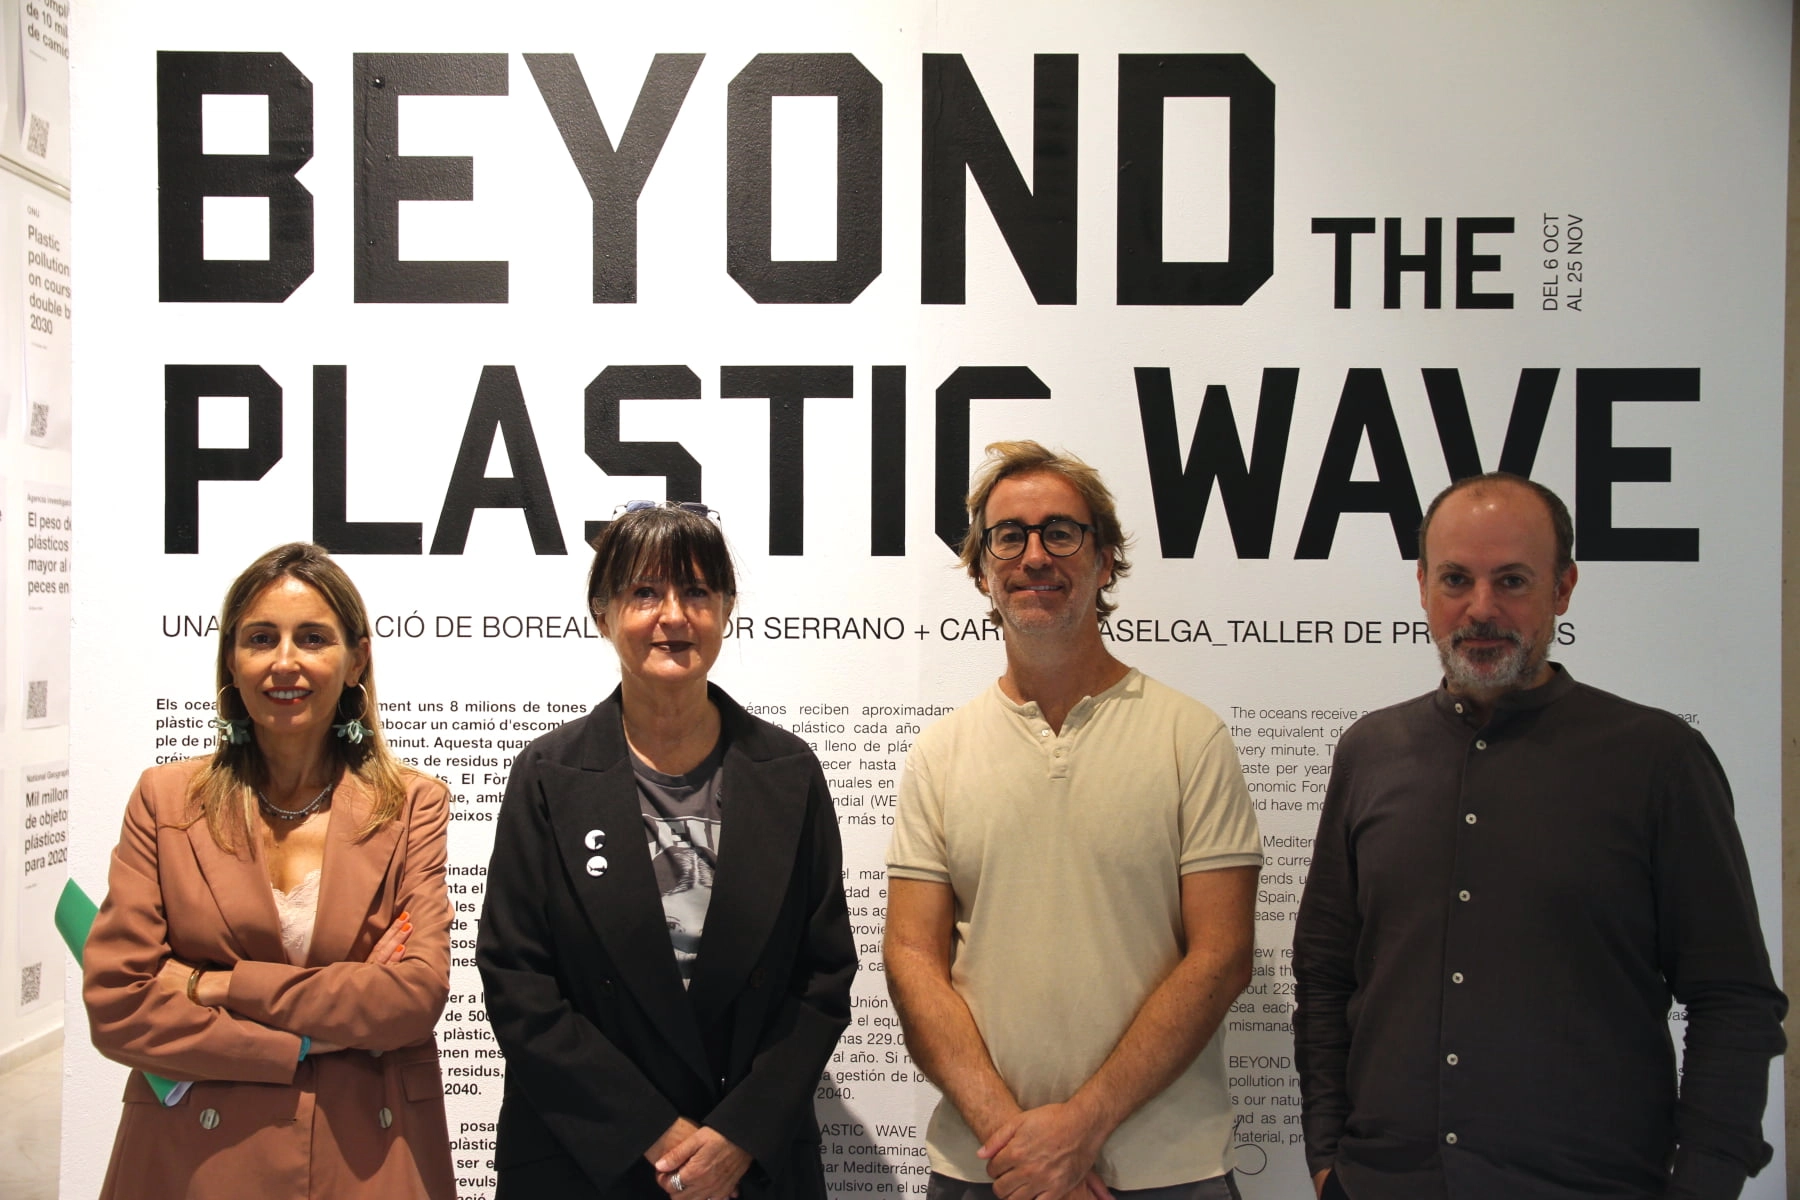 Foto dels responsables de la Expo Beyond the plastic wave